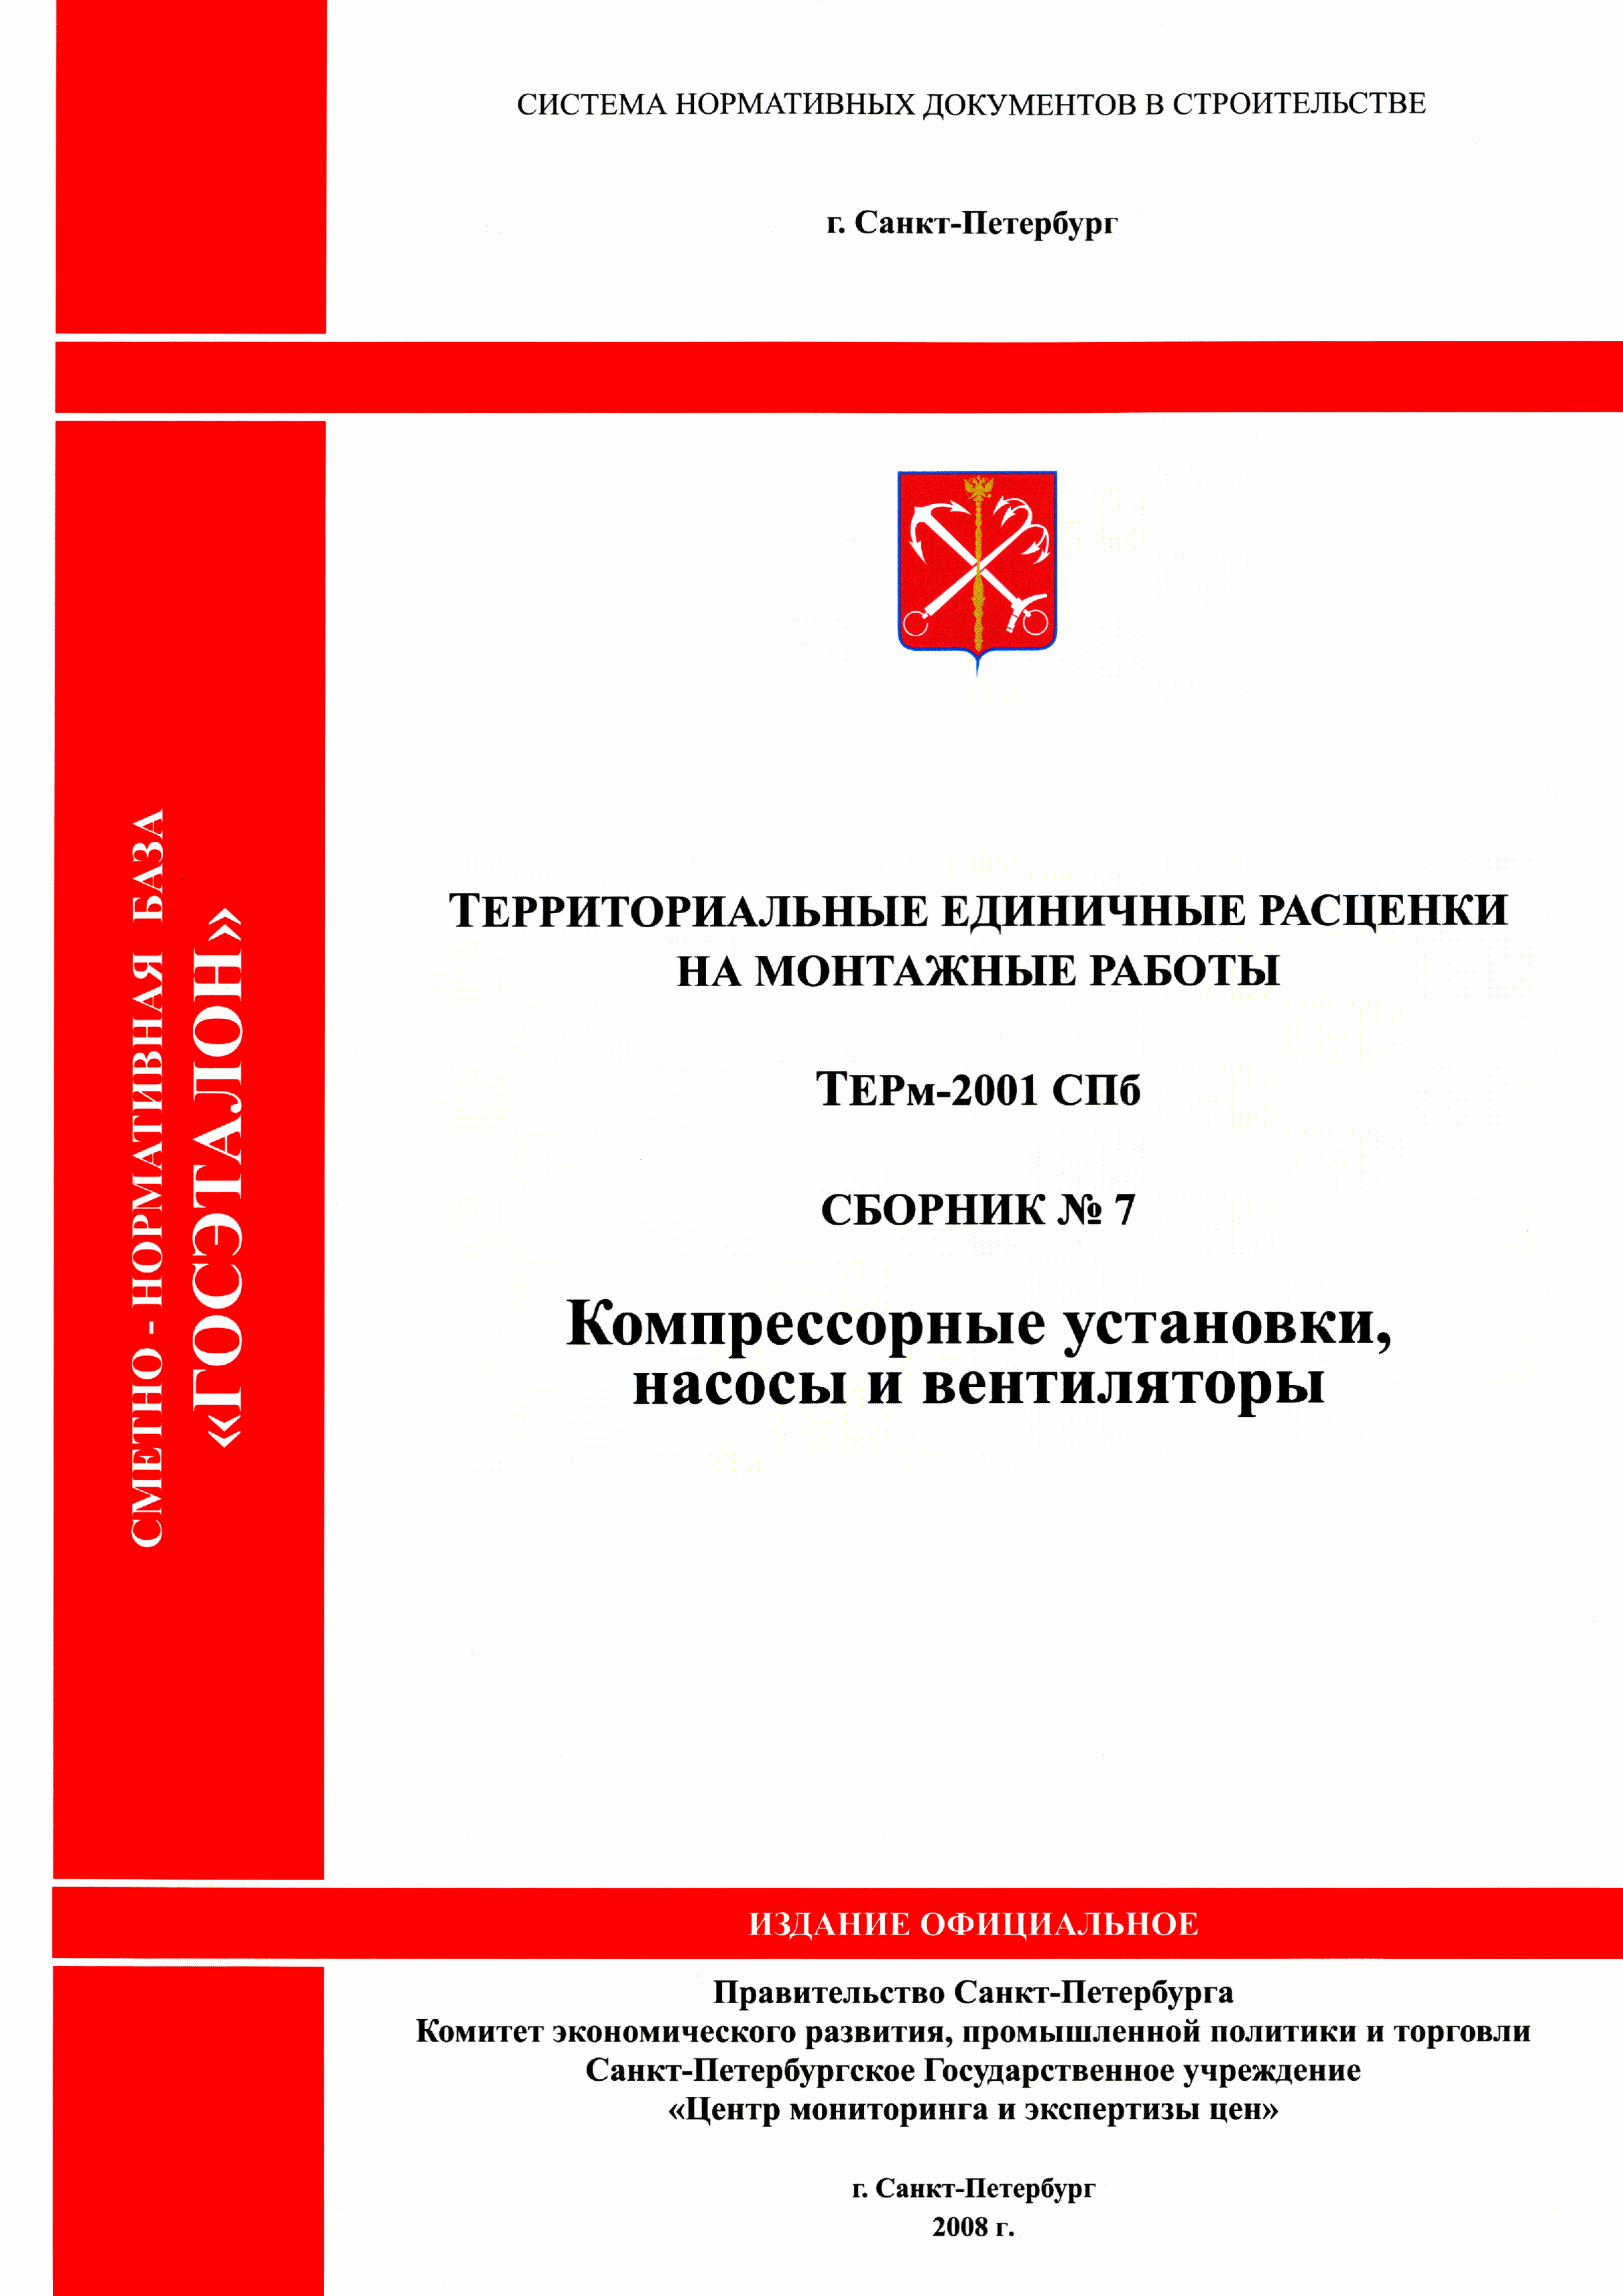 ТЕРм 2001-07 СПб